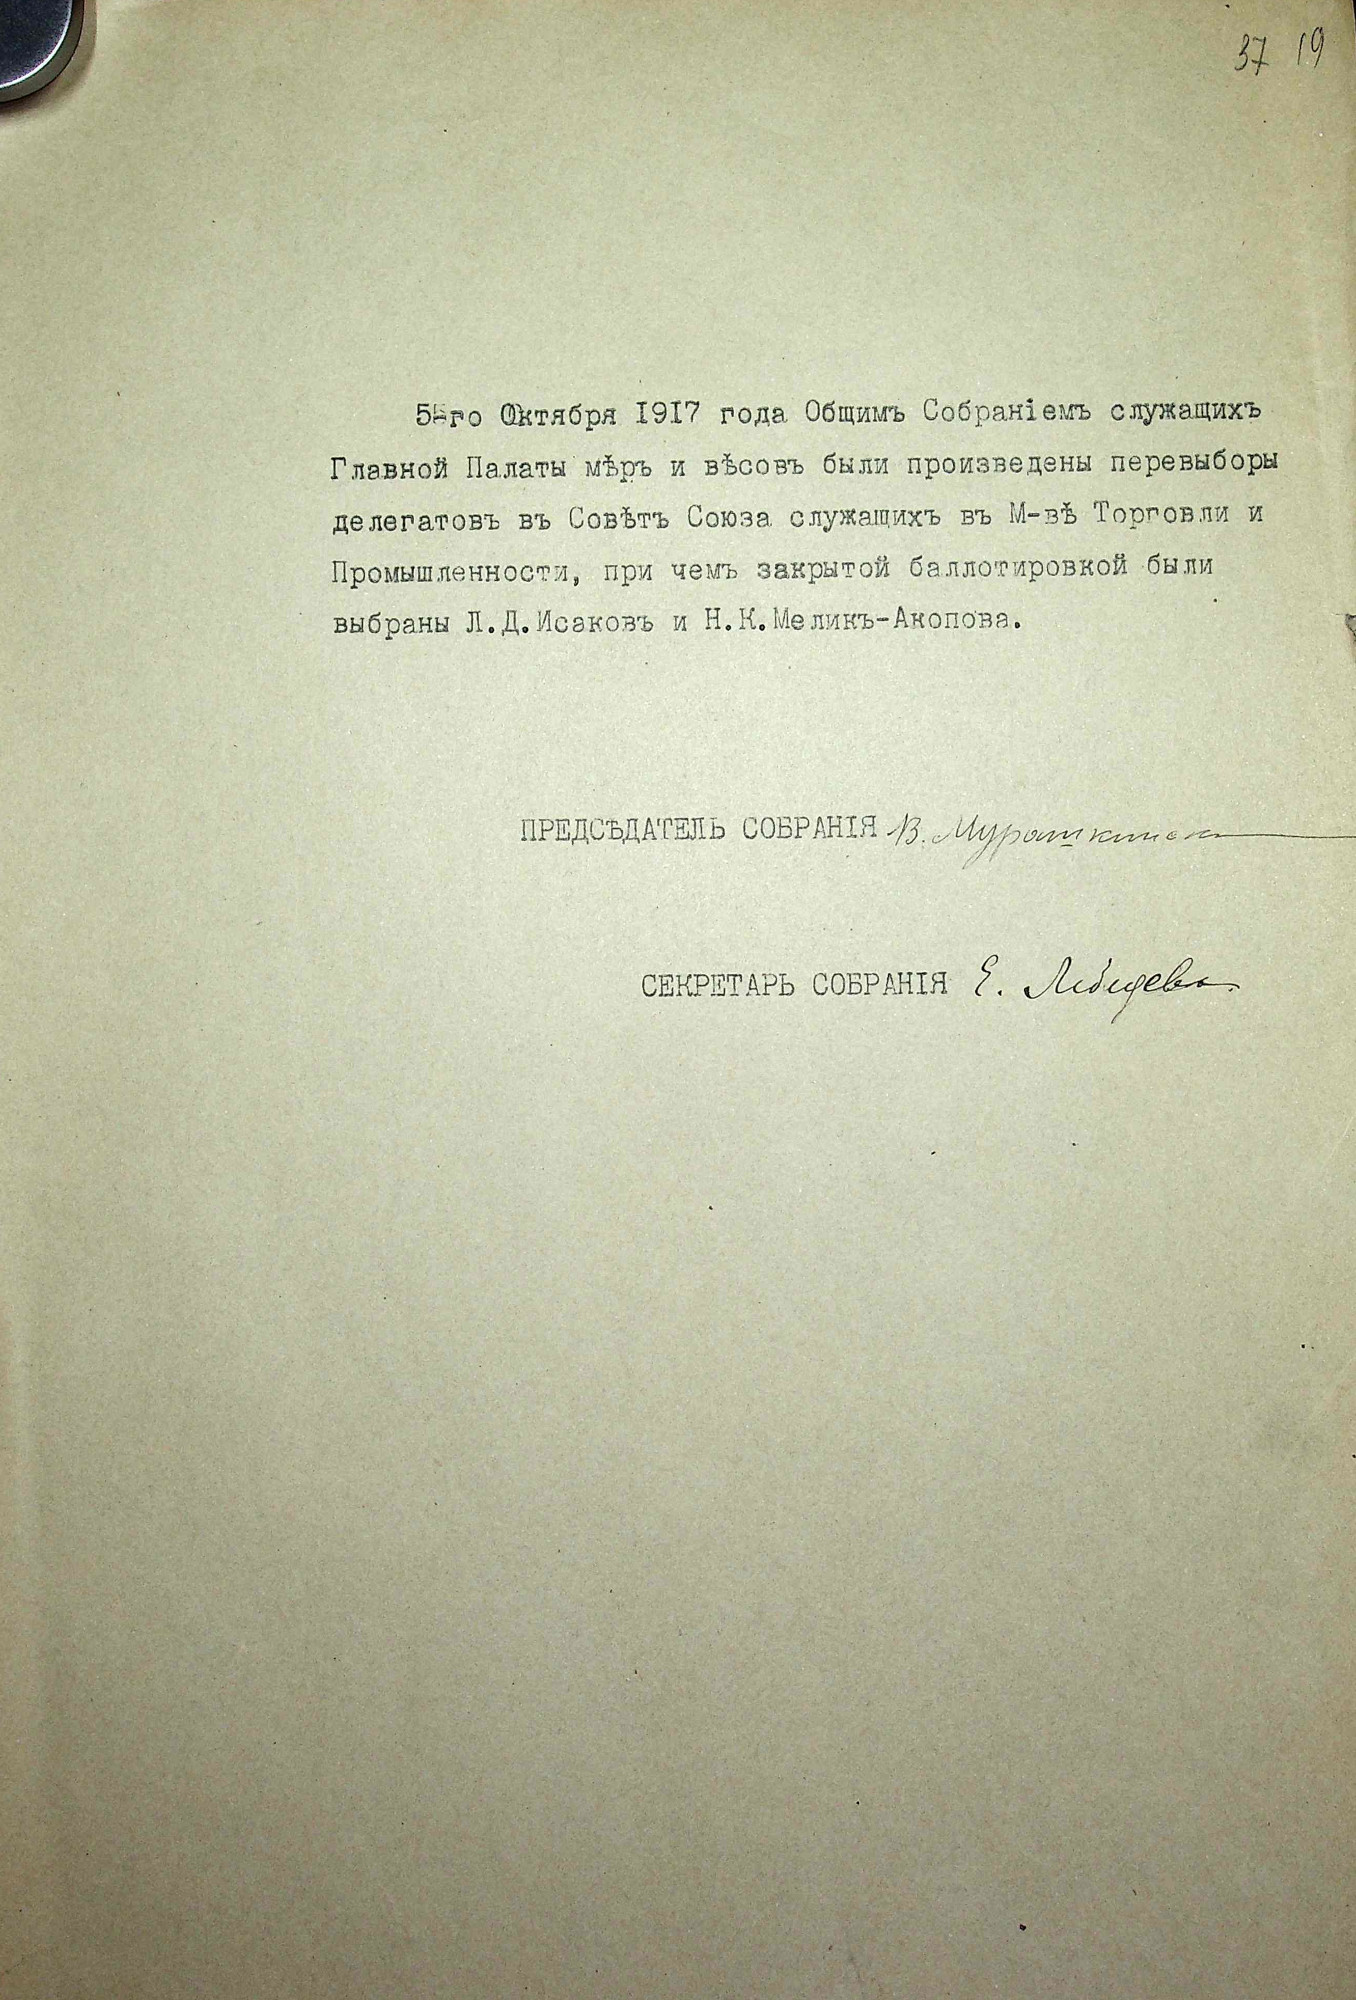 Об избрании Л.Д. Исакова и Н.К. Мелик-Акоповой делегатами в Совет союза служащих Министерства торговли и промышленности, 5 октября 1917 г.